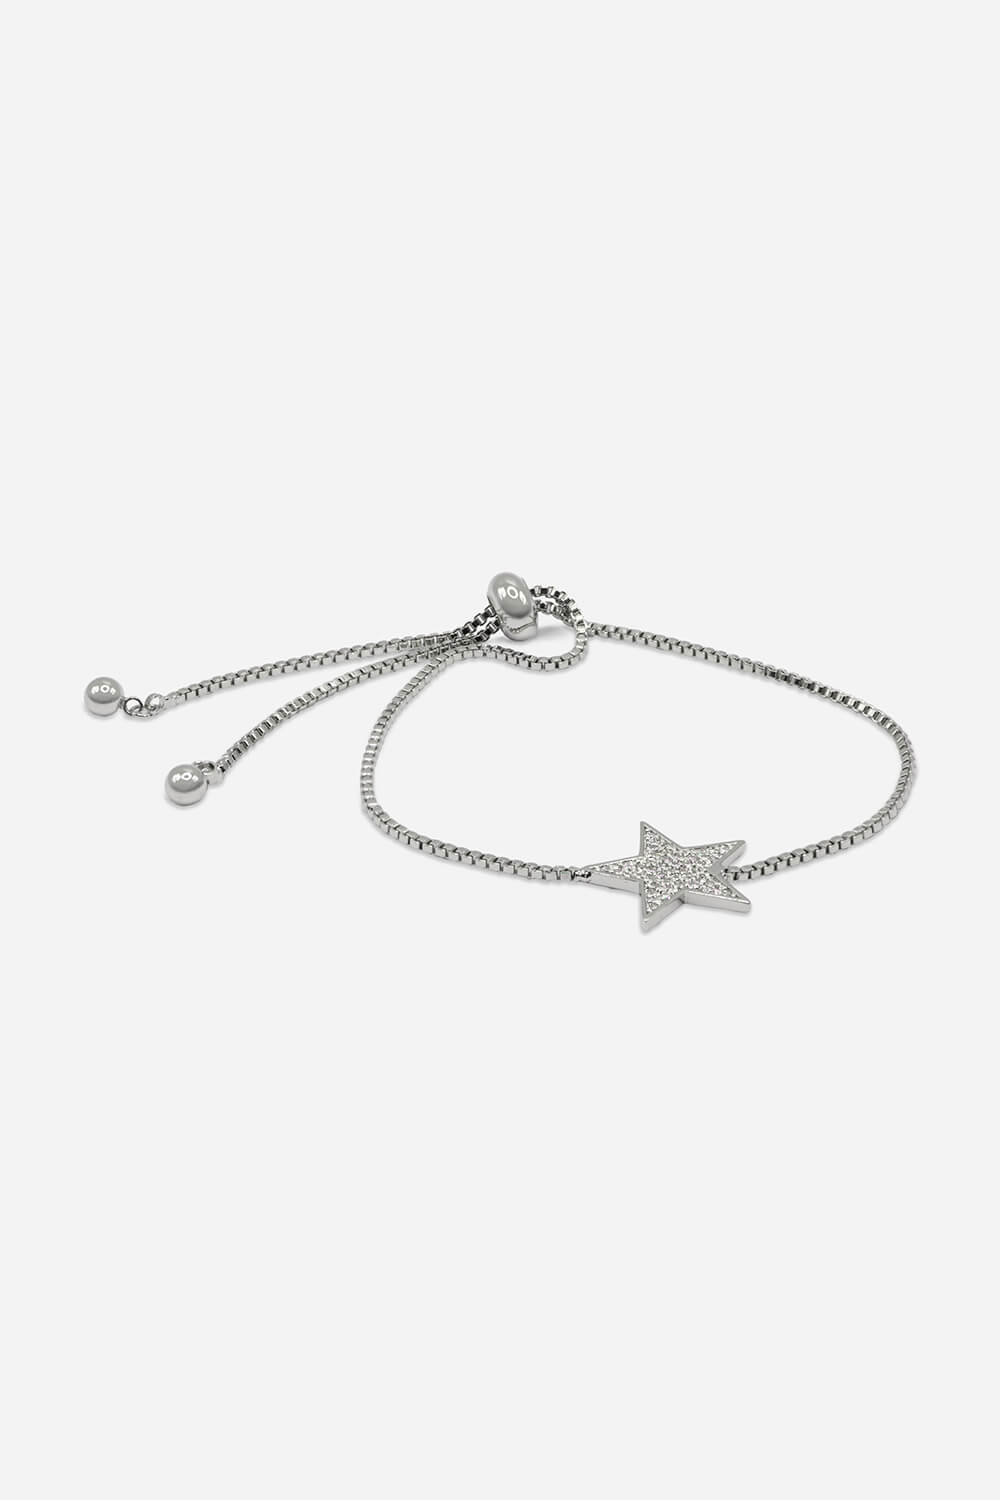 Silver Adjustable Star Friendship Bracelet, Image 2 of 2